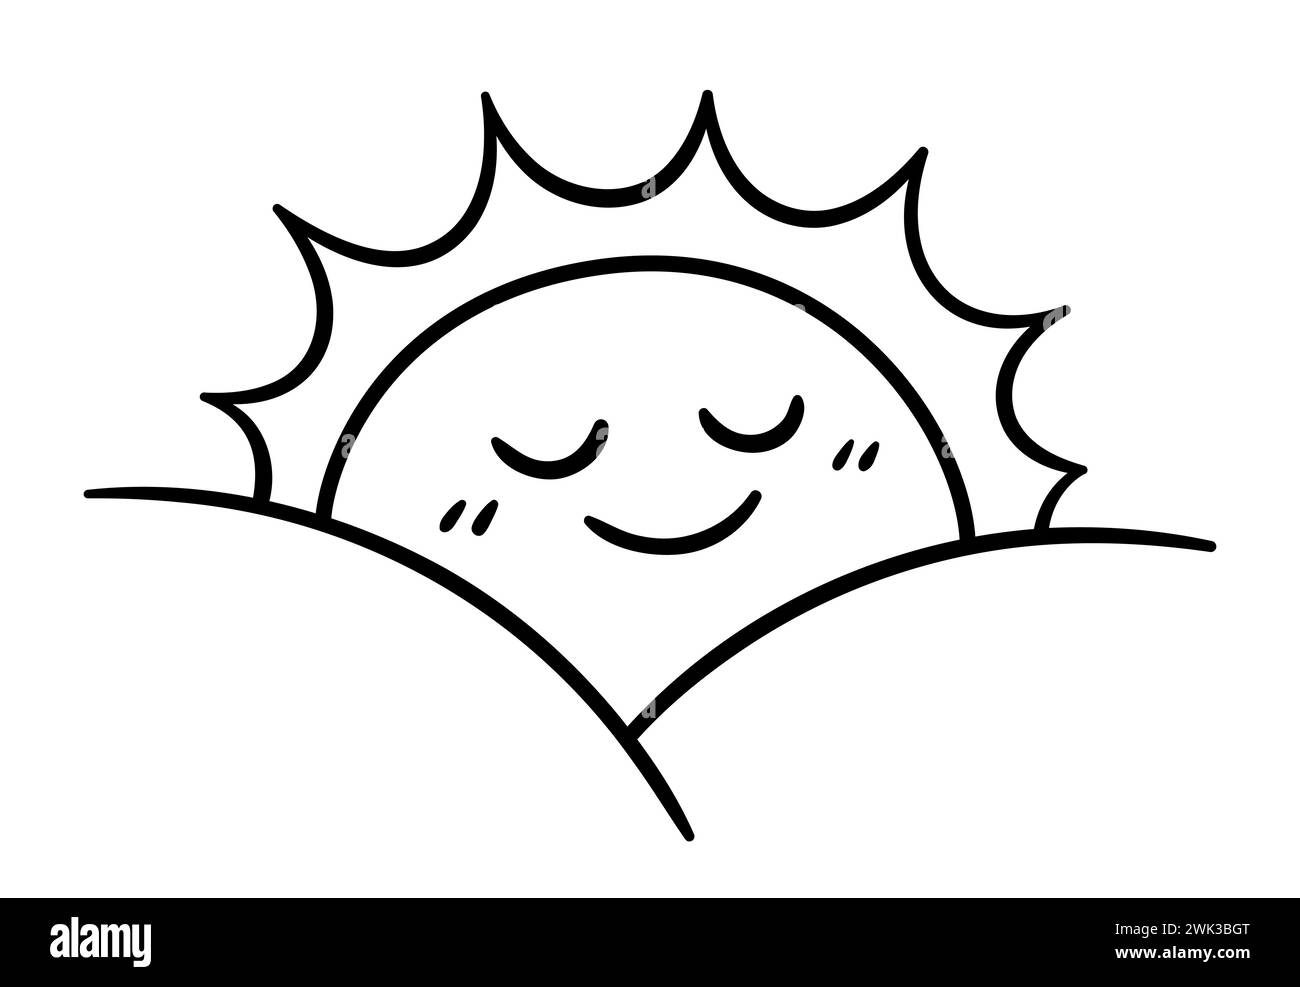 Einfaches Doodle bei Sonnenaufgang, niedliche Comic-aufgehende Sonne mit lächelndem Gesicht. Schwarzweiß-Strichgrafik, Vektorillustration. Stock Vektor